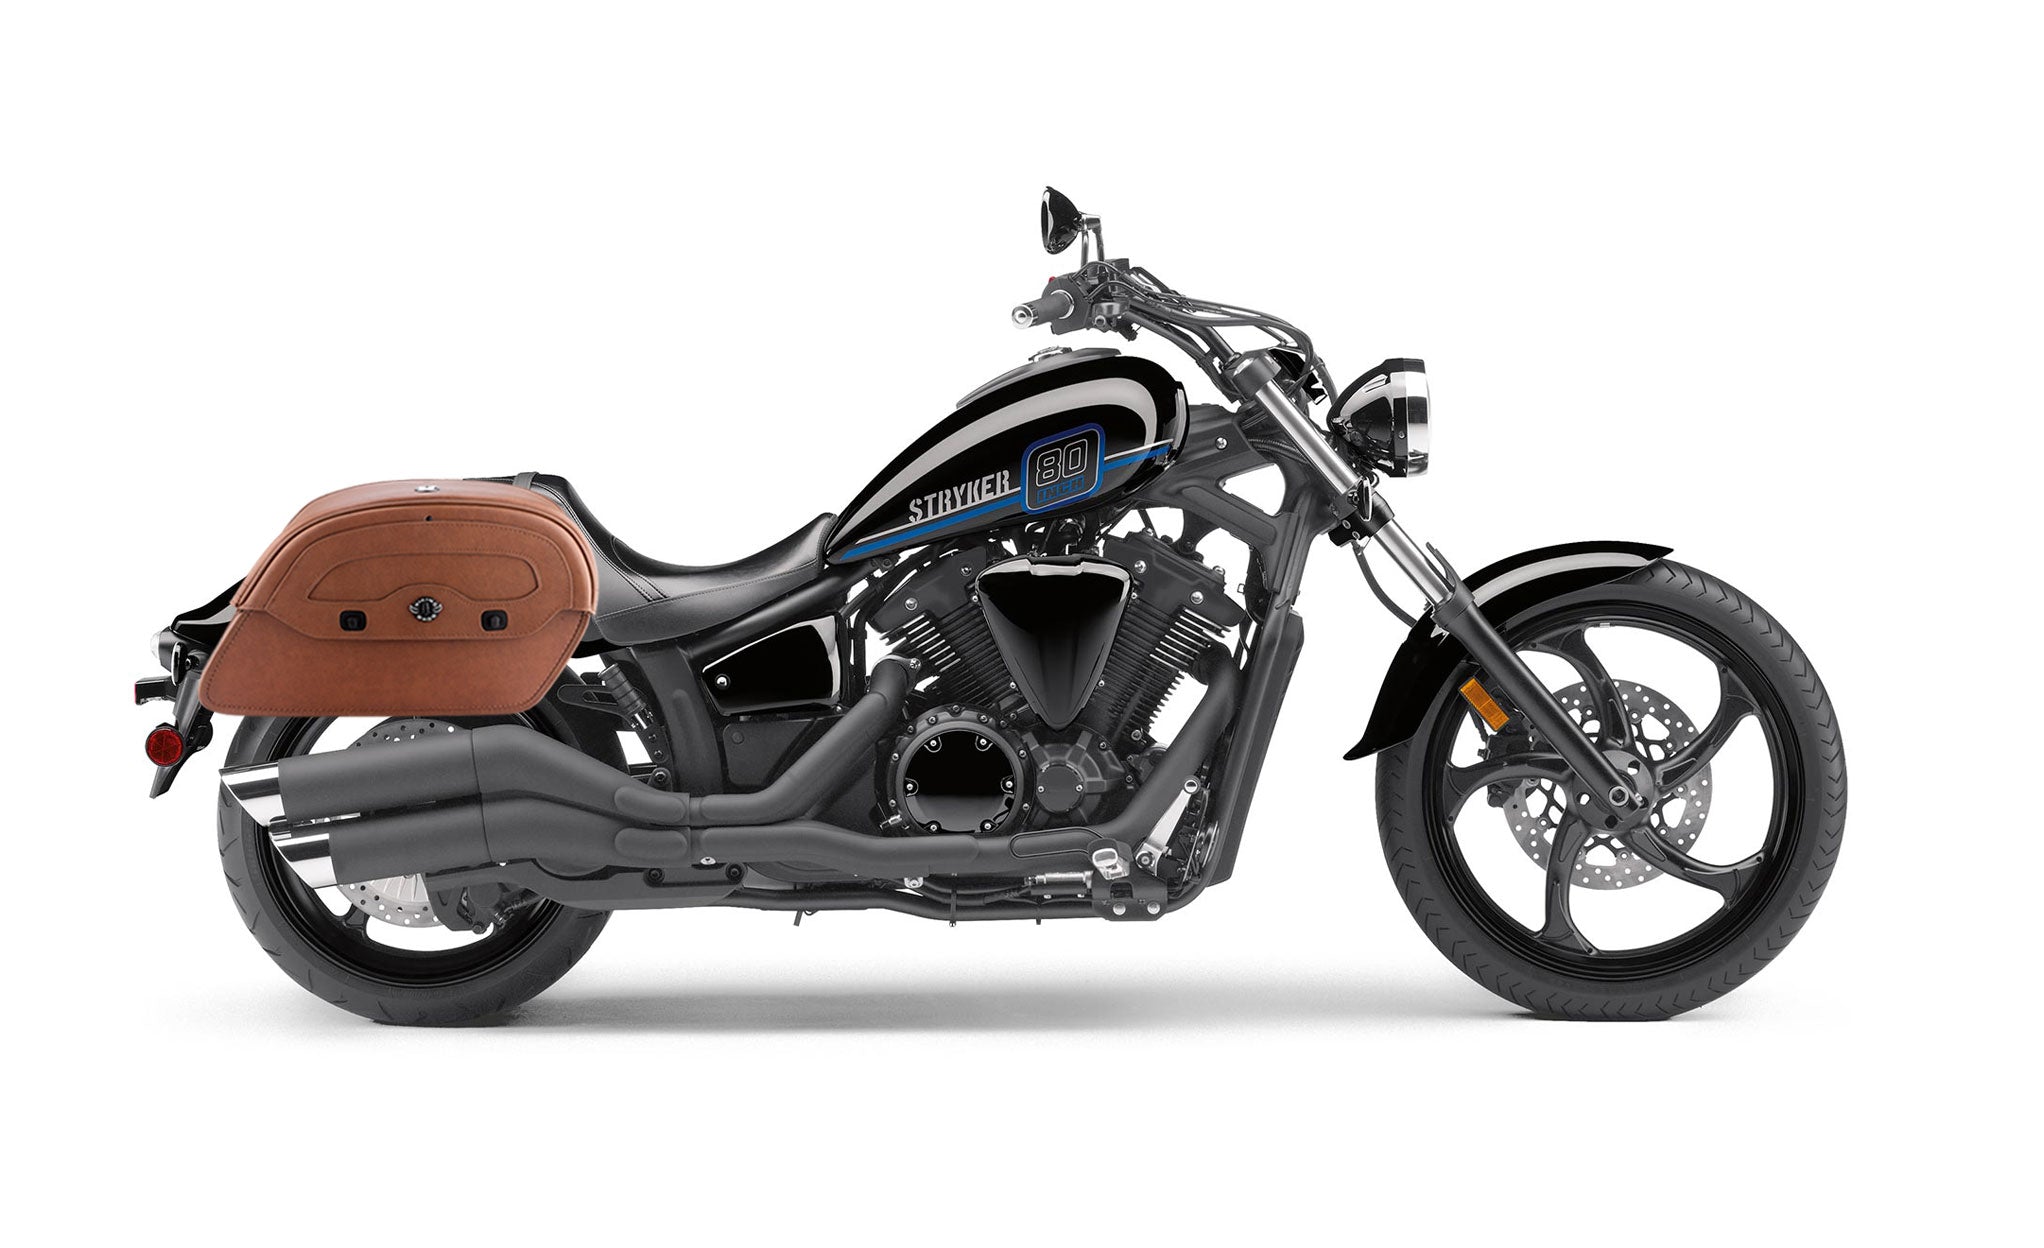 Viking Warrior Brown Large Yamaha Stryker Leather Motorcycle Saddlebags on Bike Photo @expand